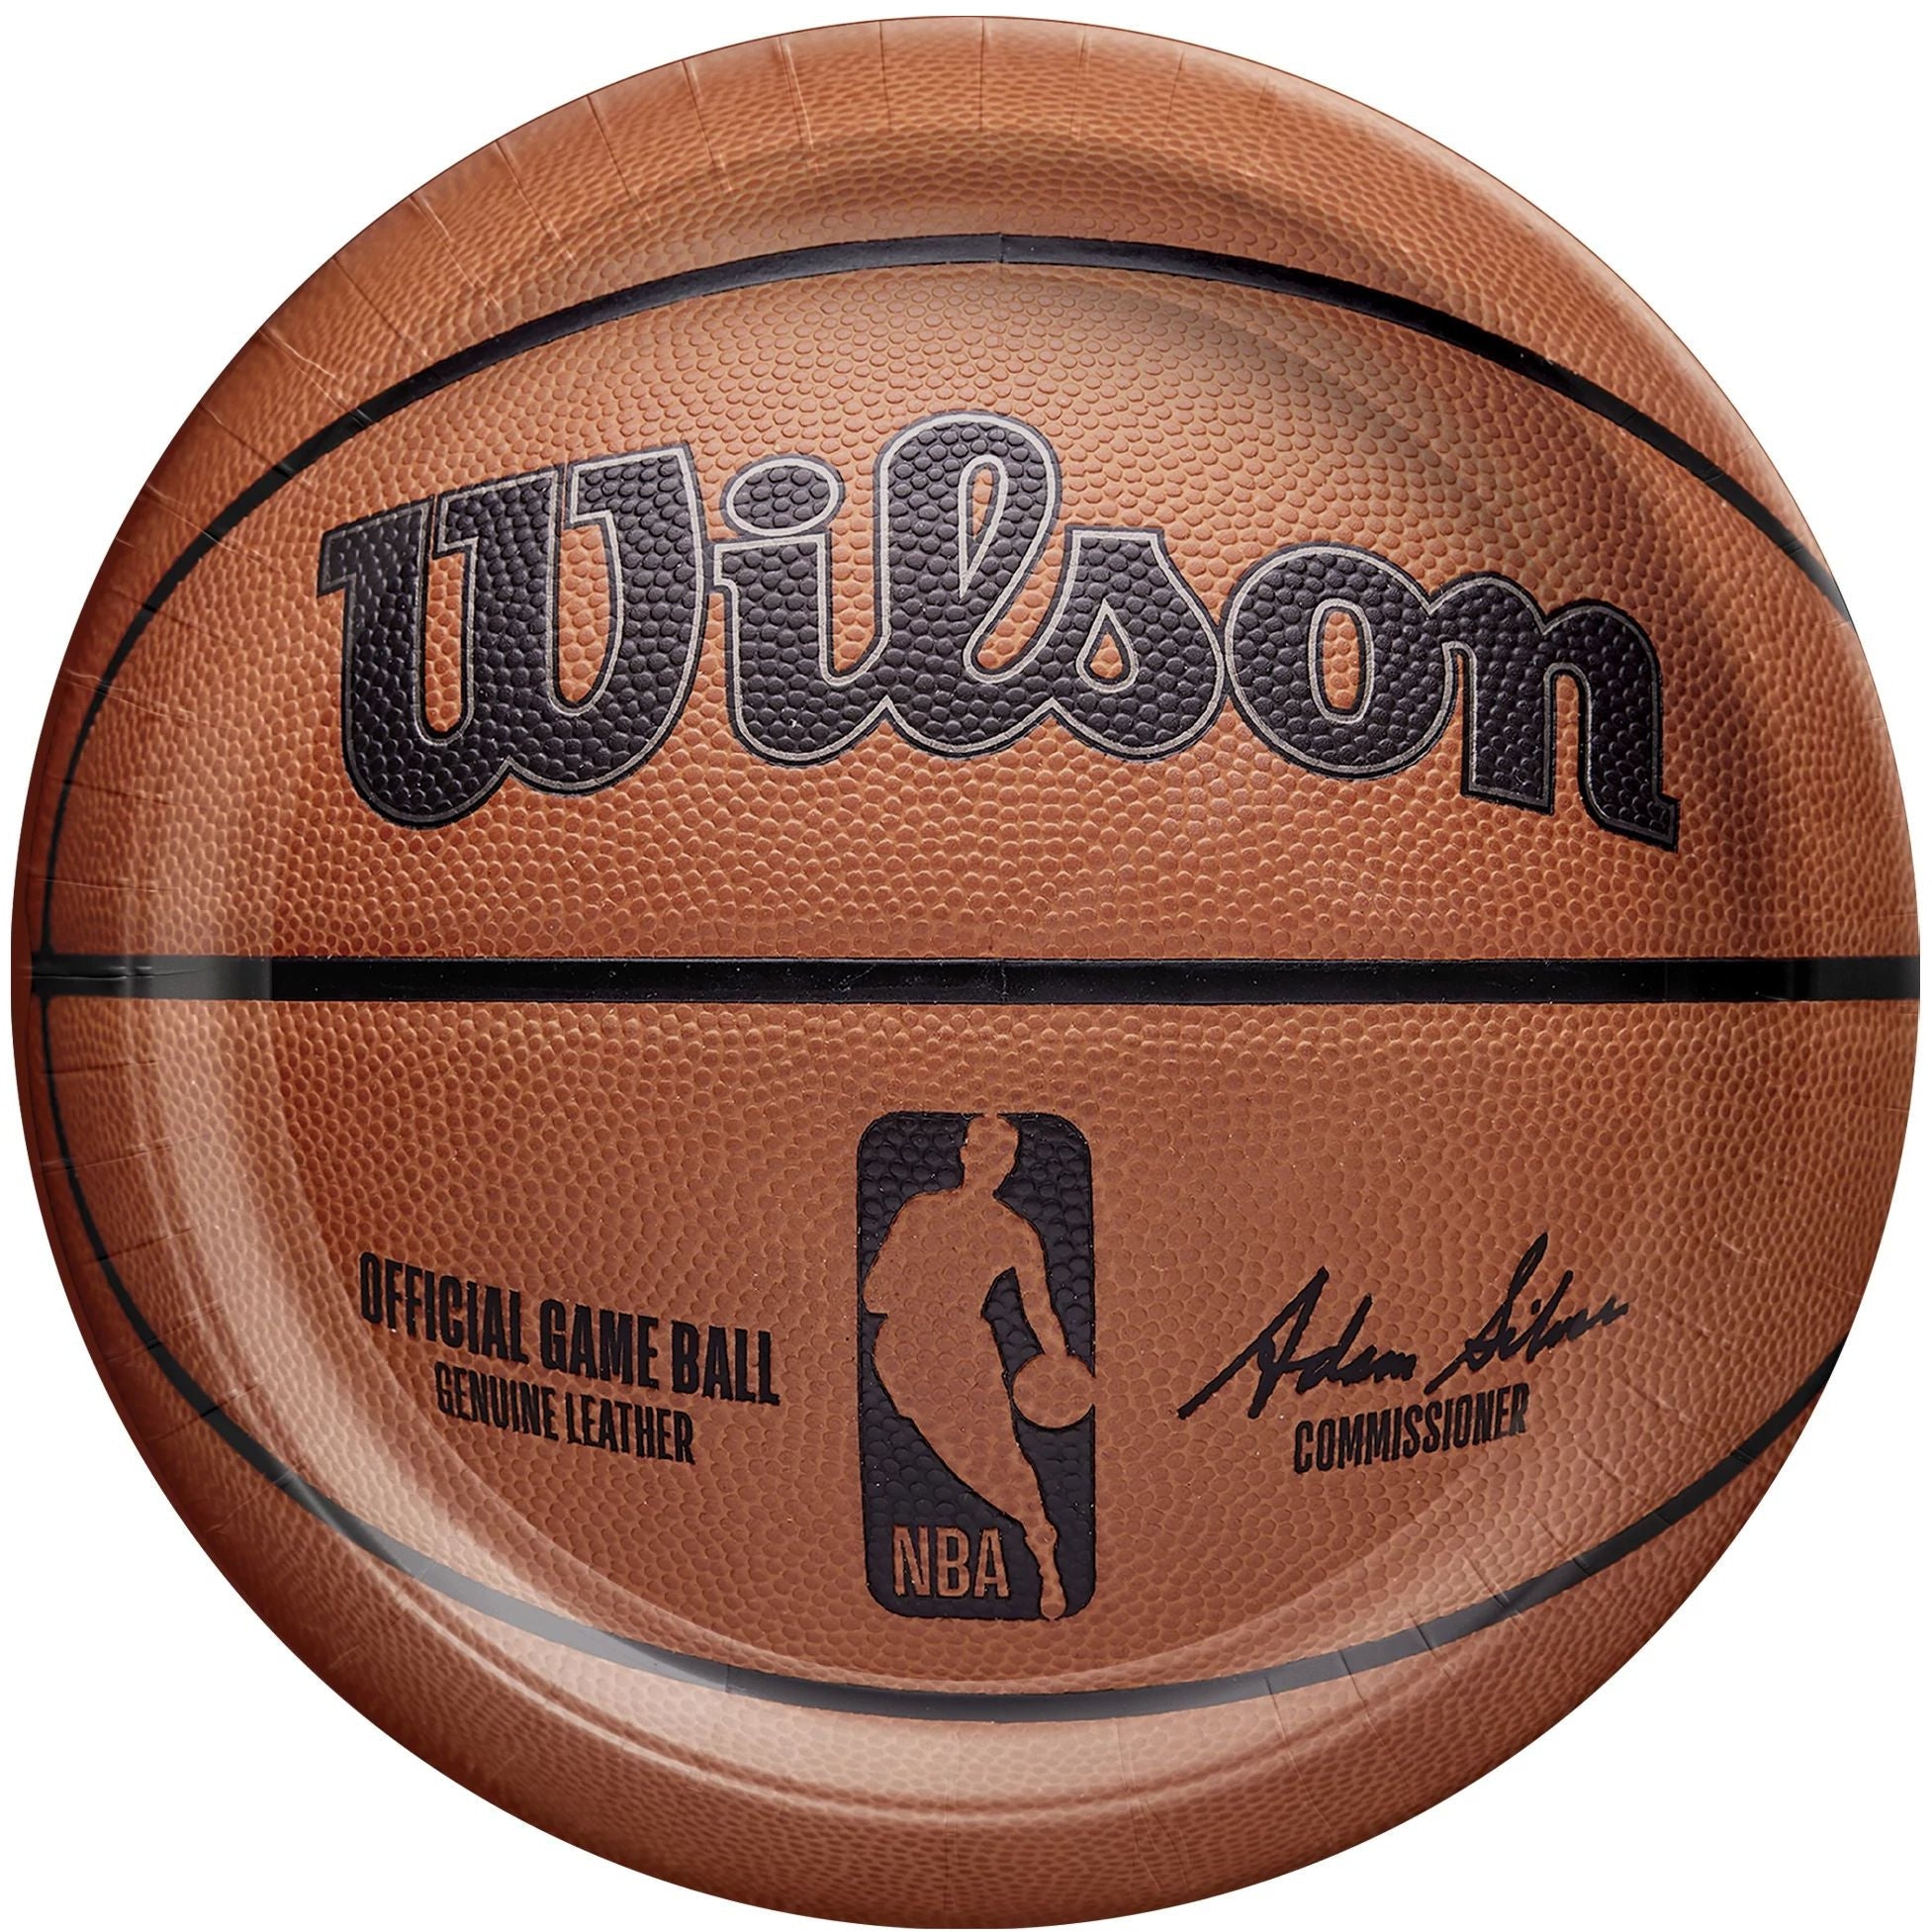 Amscan THEME: SPORTS NBA Wilson 9" Round Plates